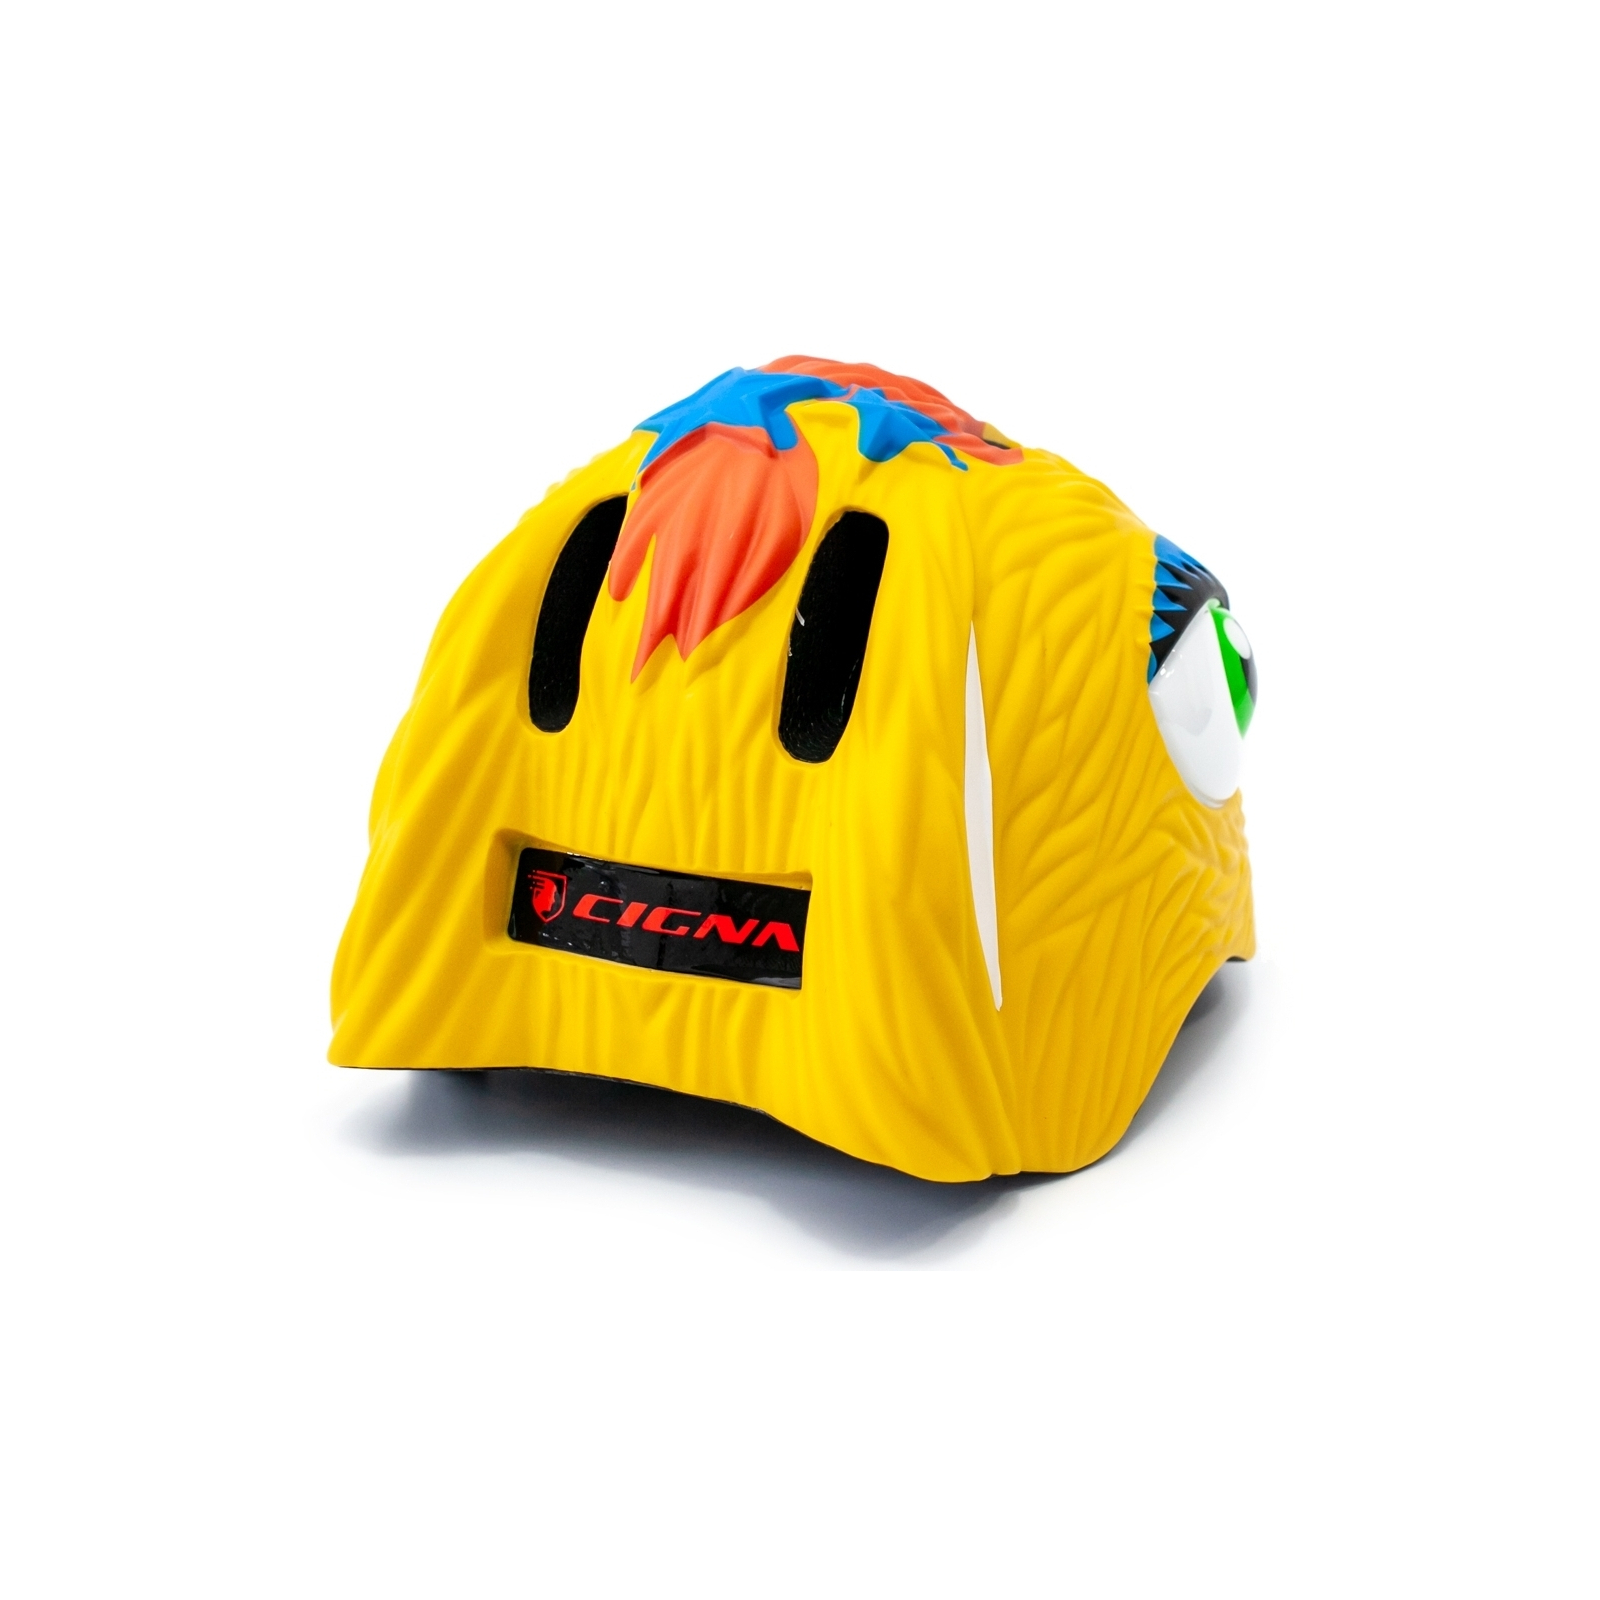 Шлем Velotrade Crazy Safety "Зебра" (HEAD-069) изображение 2